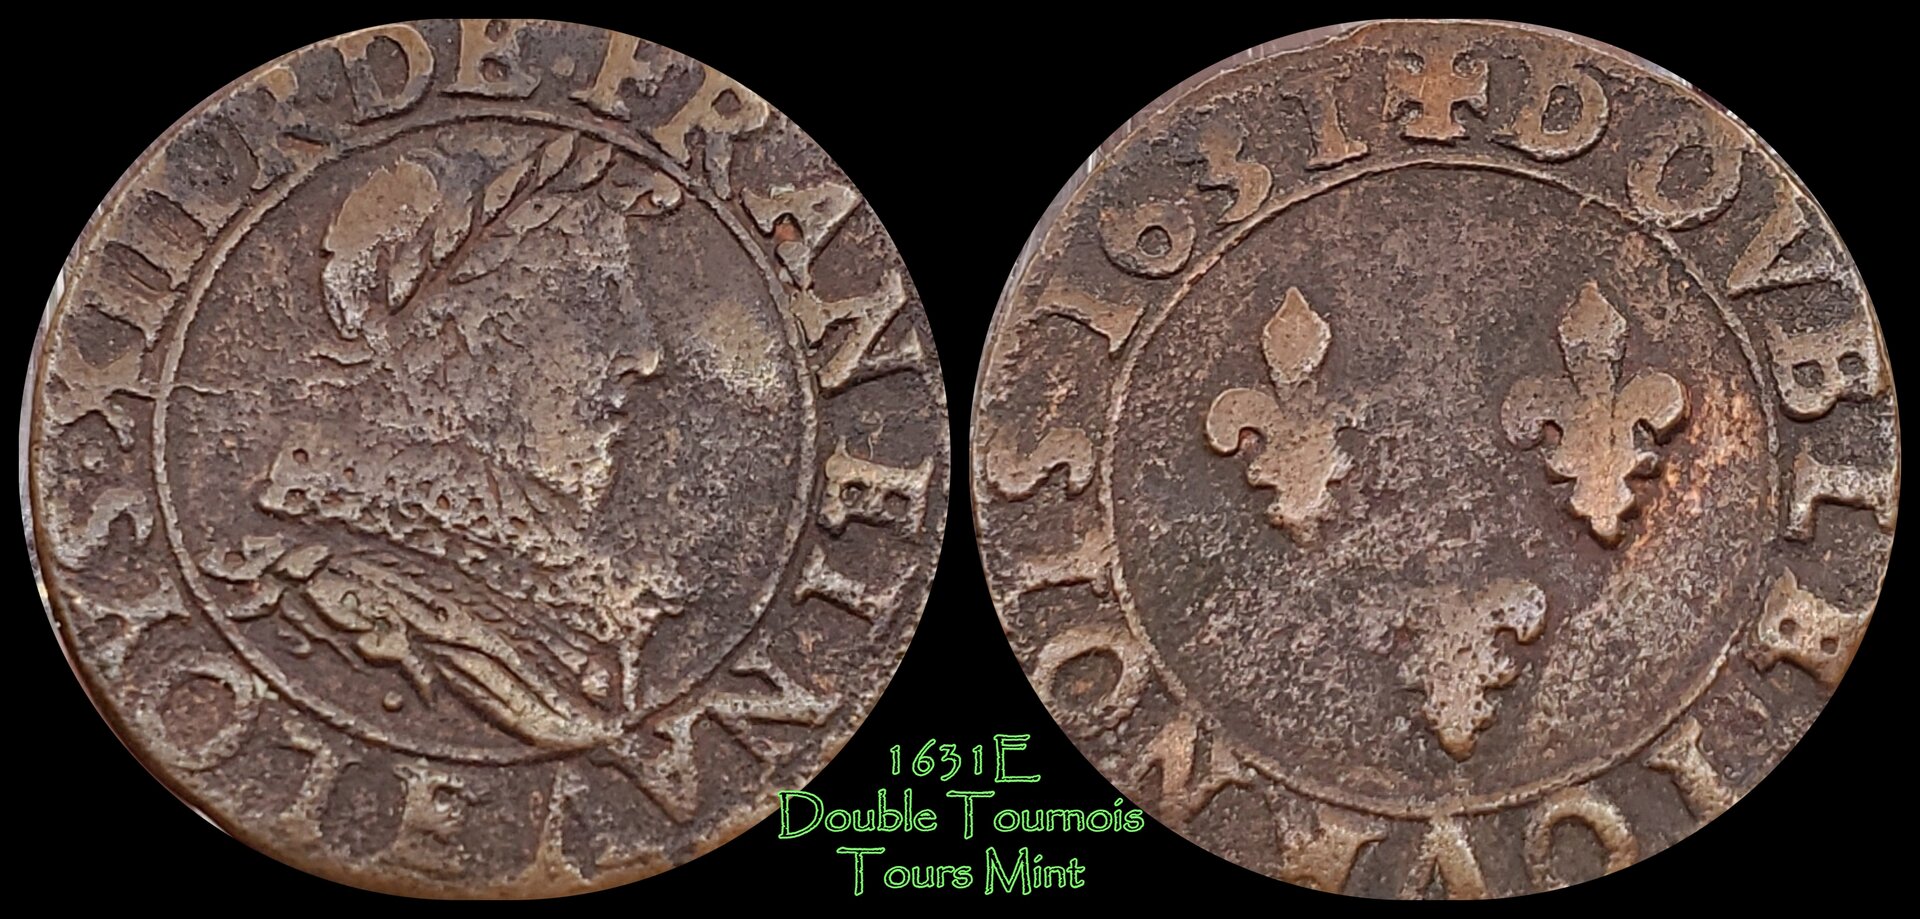 1631 e Double Tournois.jpg